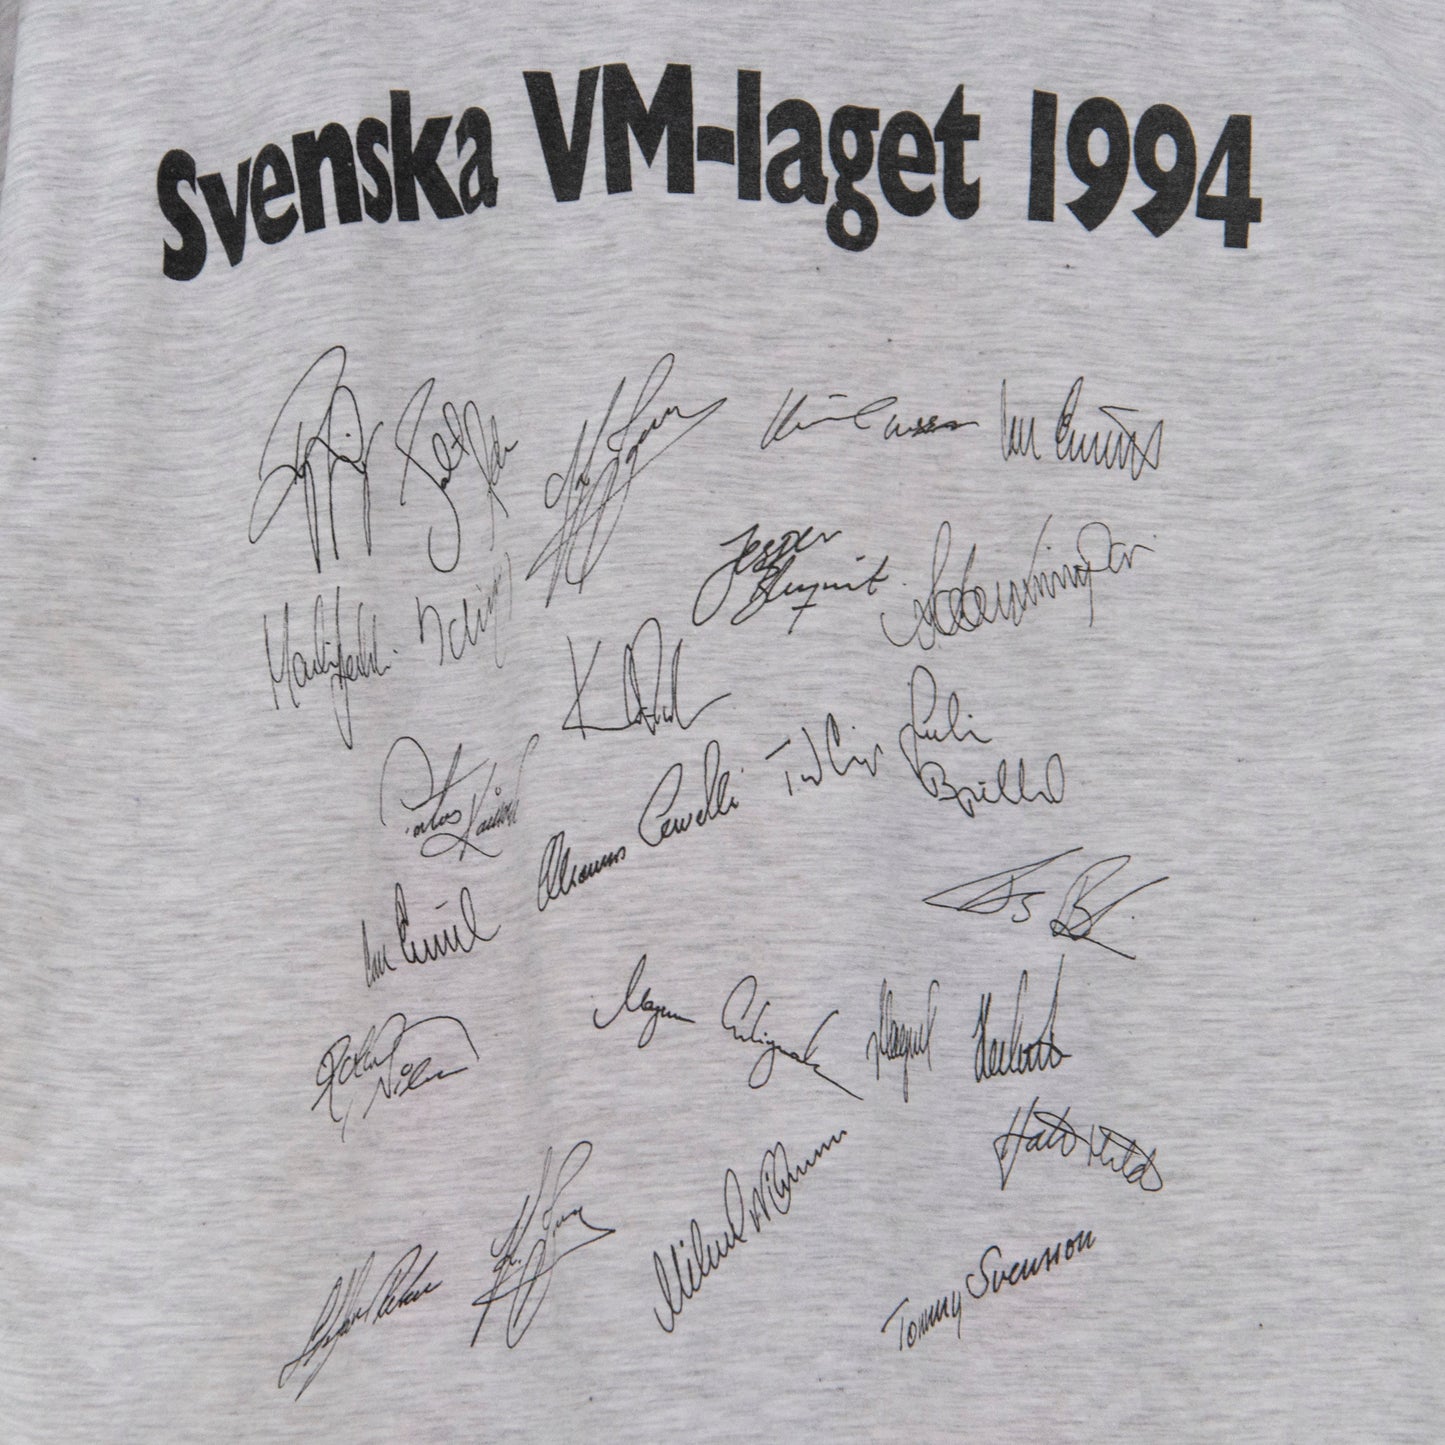 1994 USA World Cup T-Shirt S-M